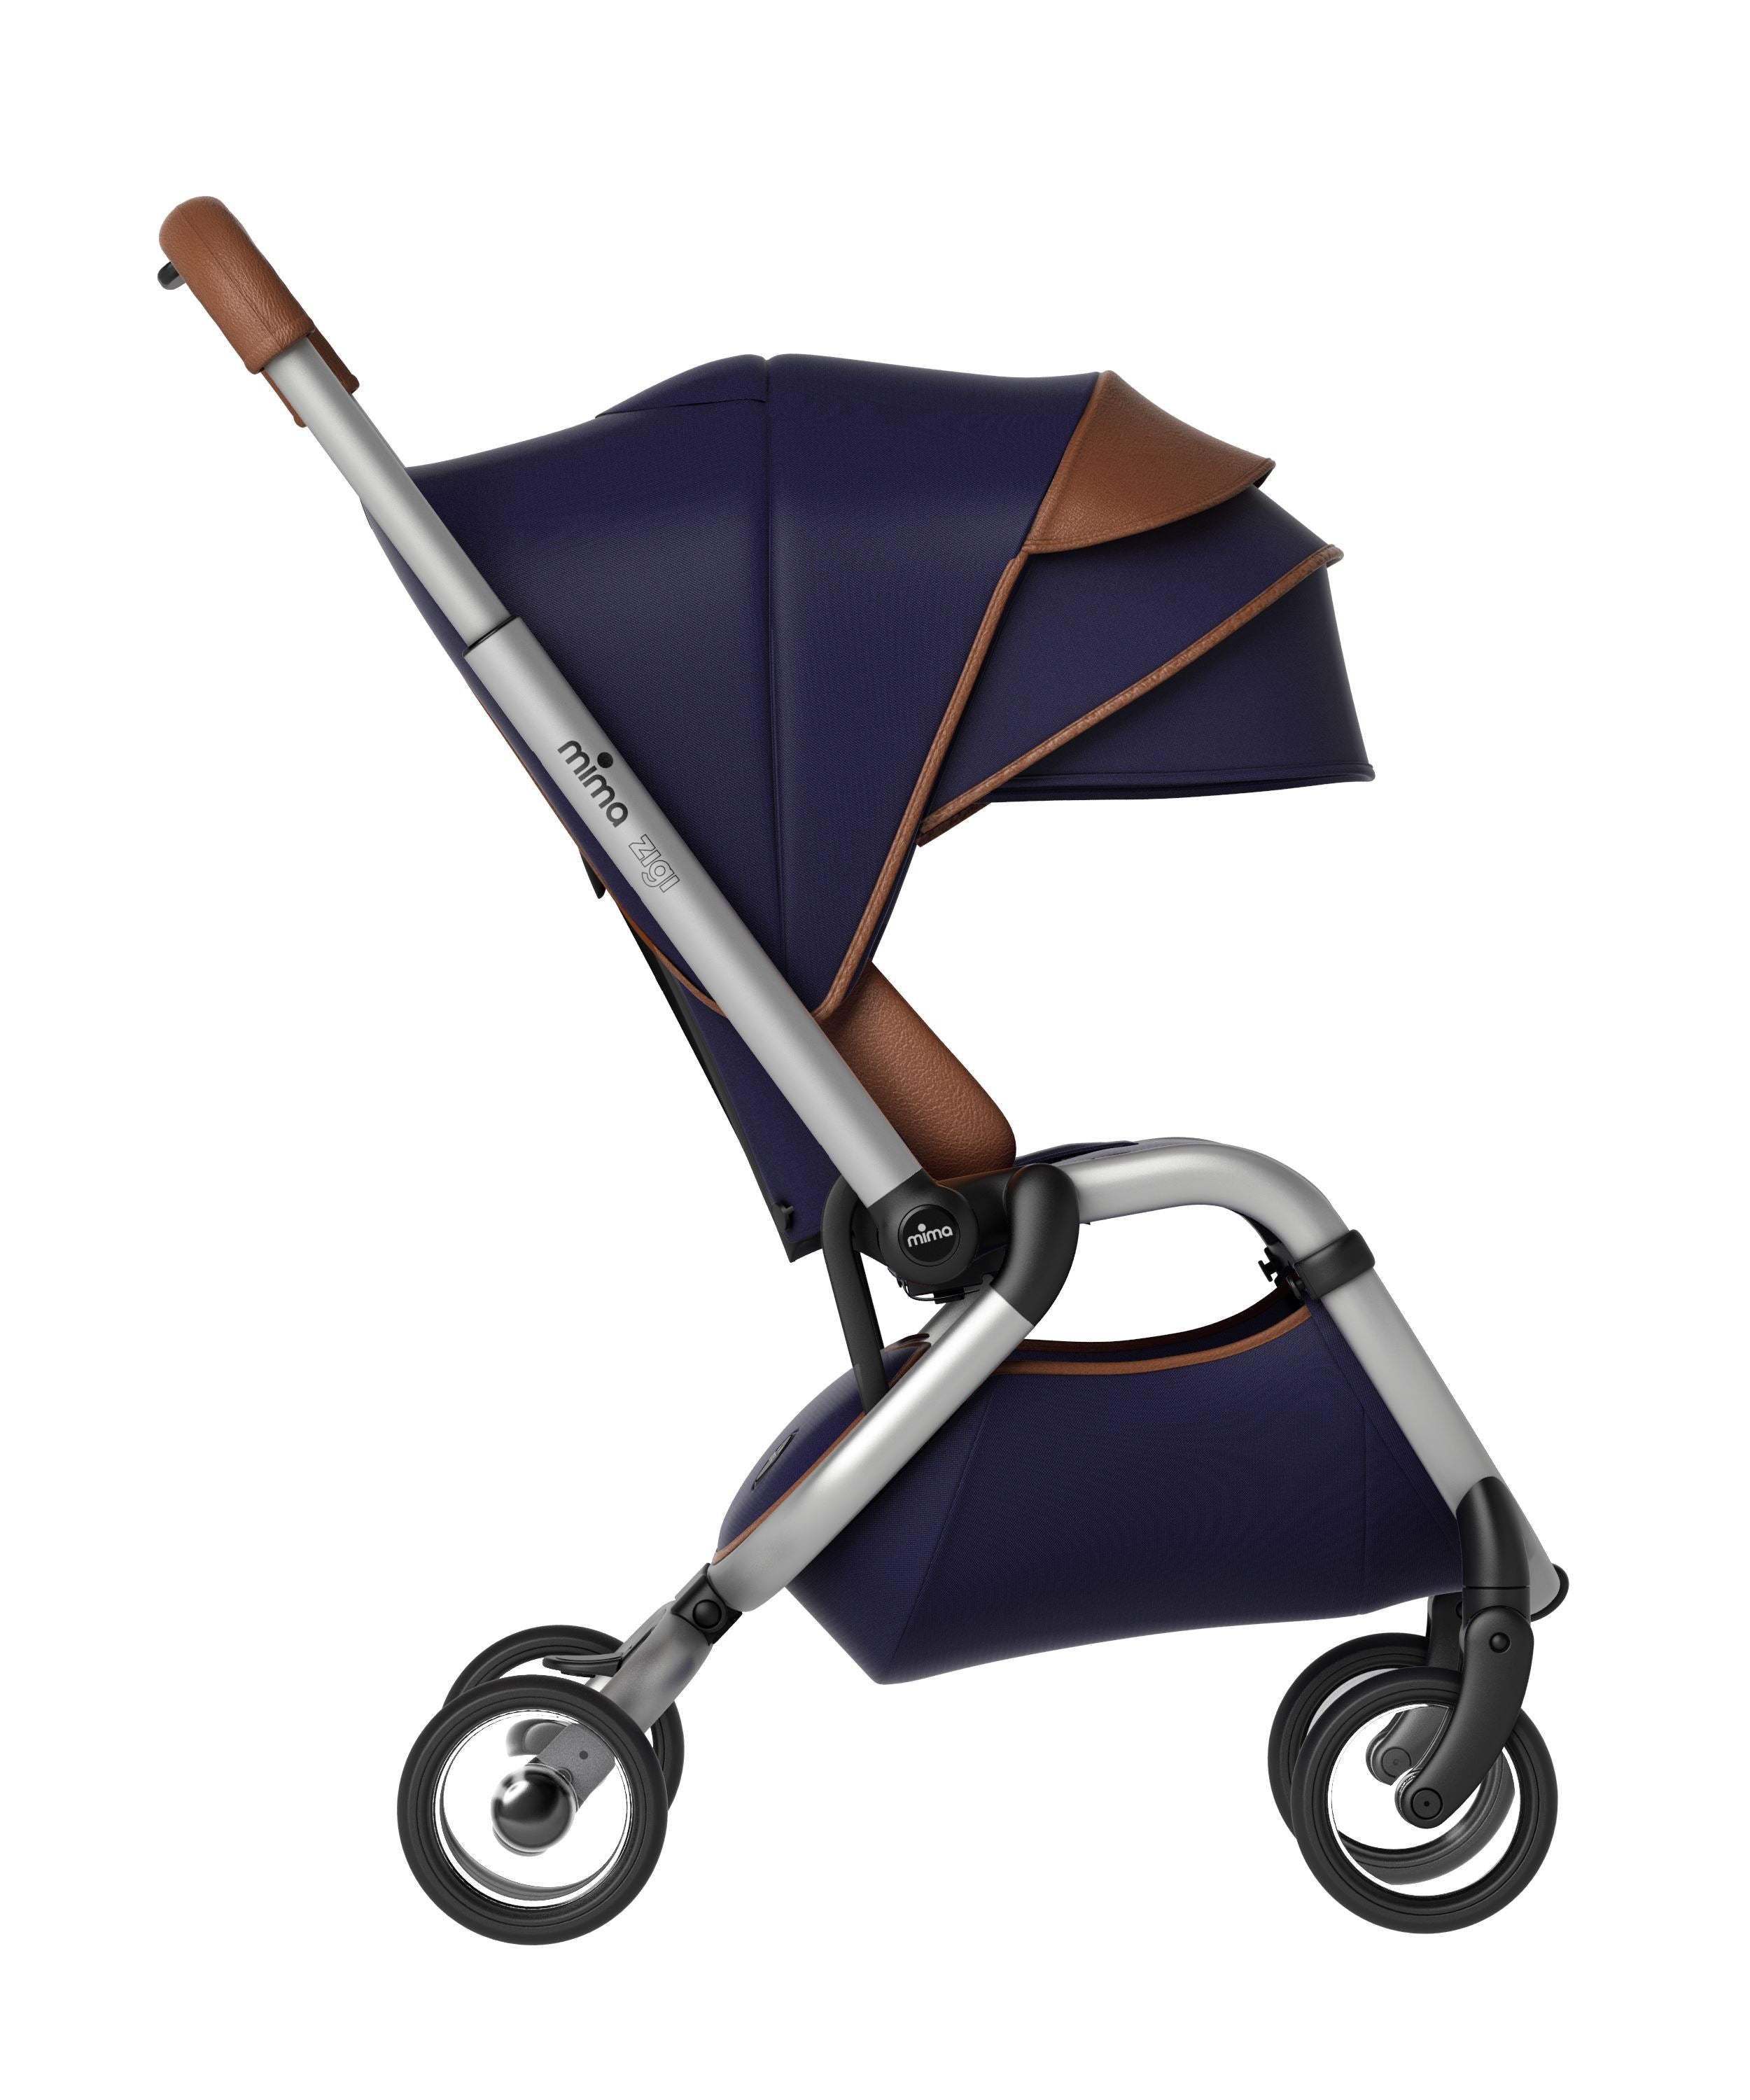 travel stroller for baby